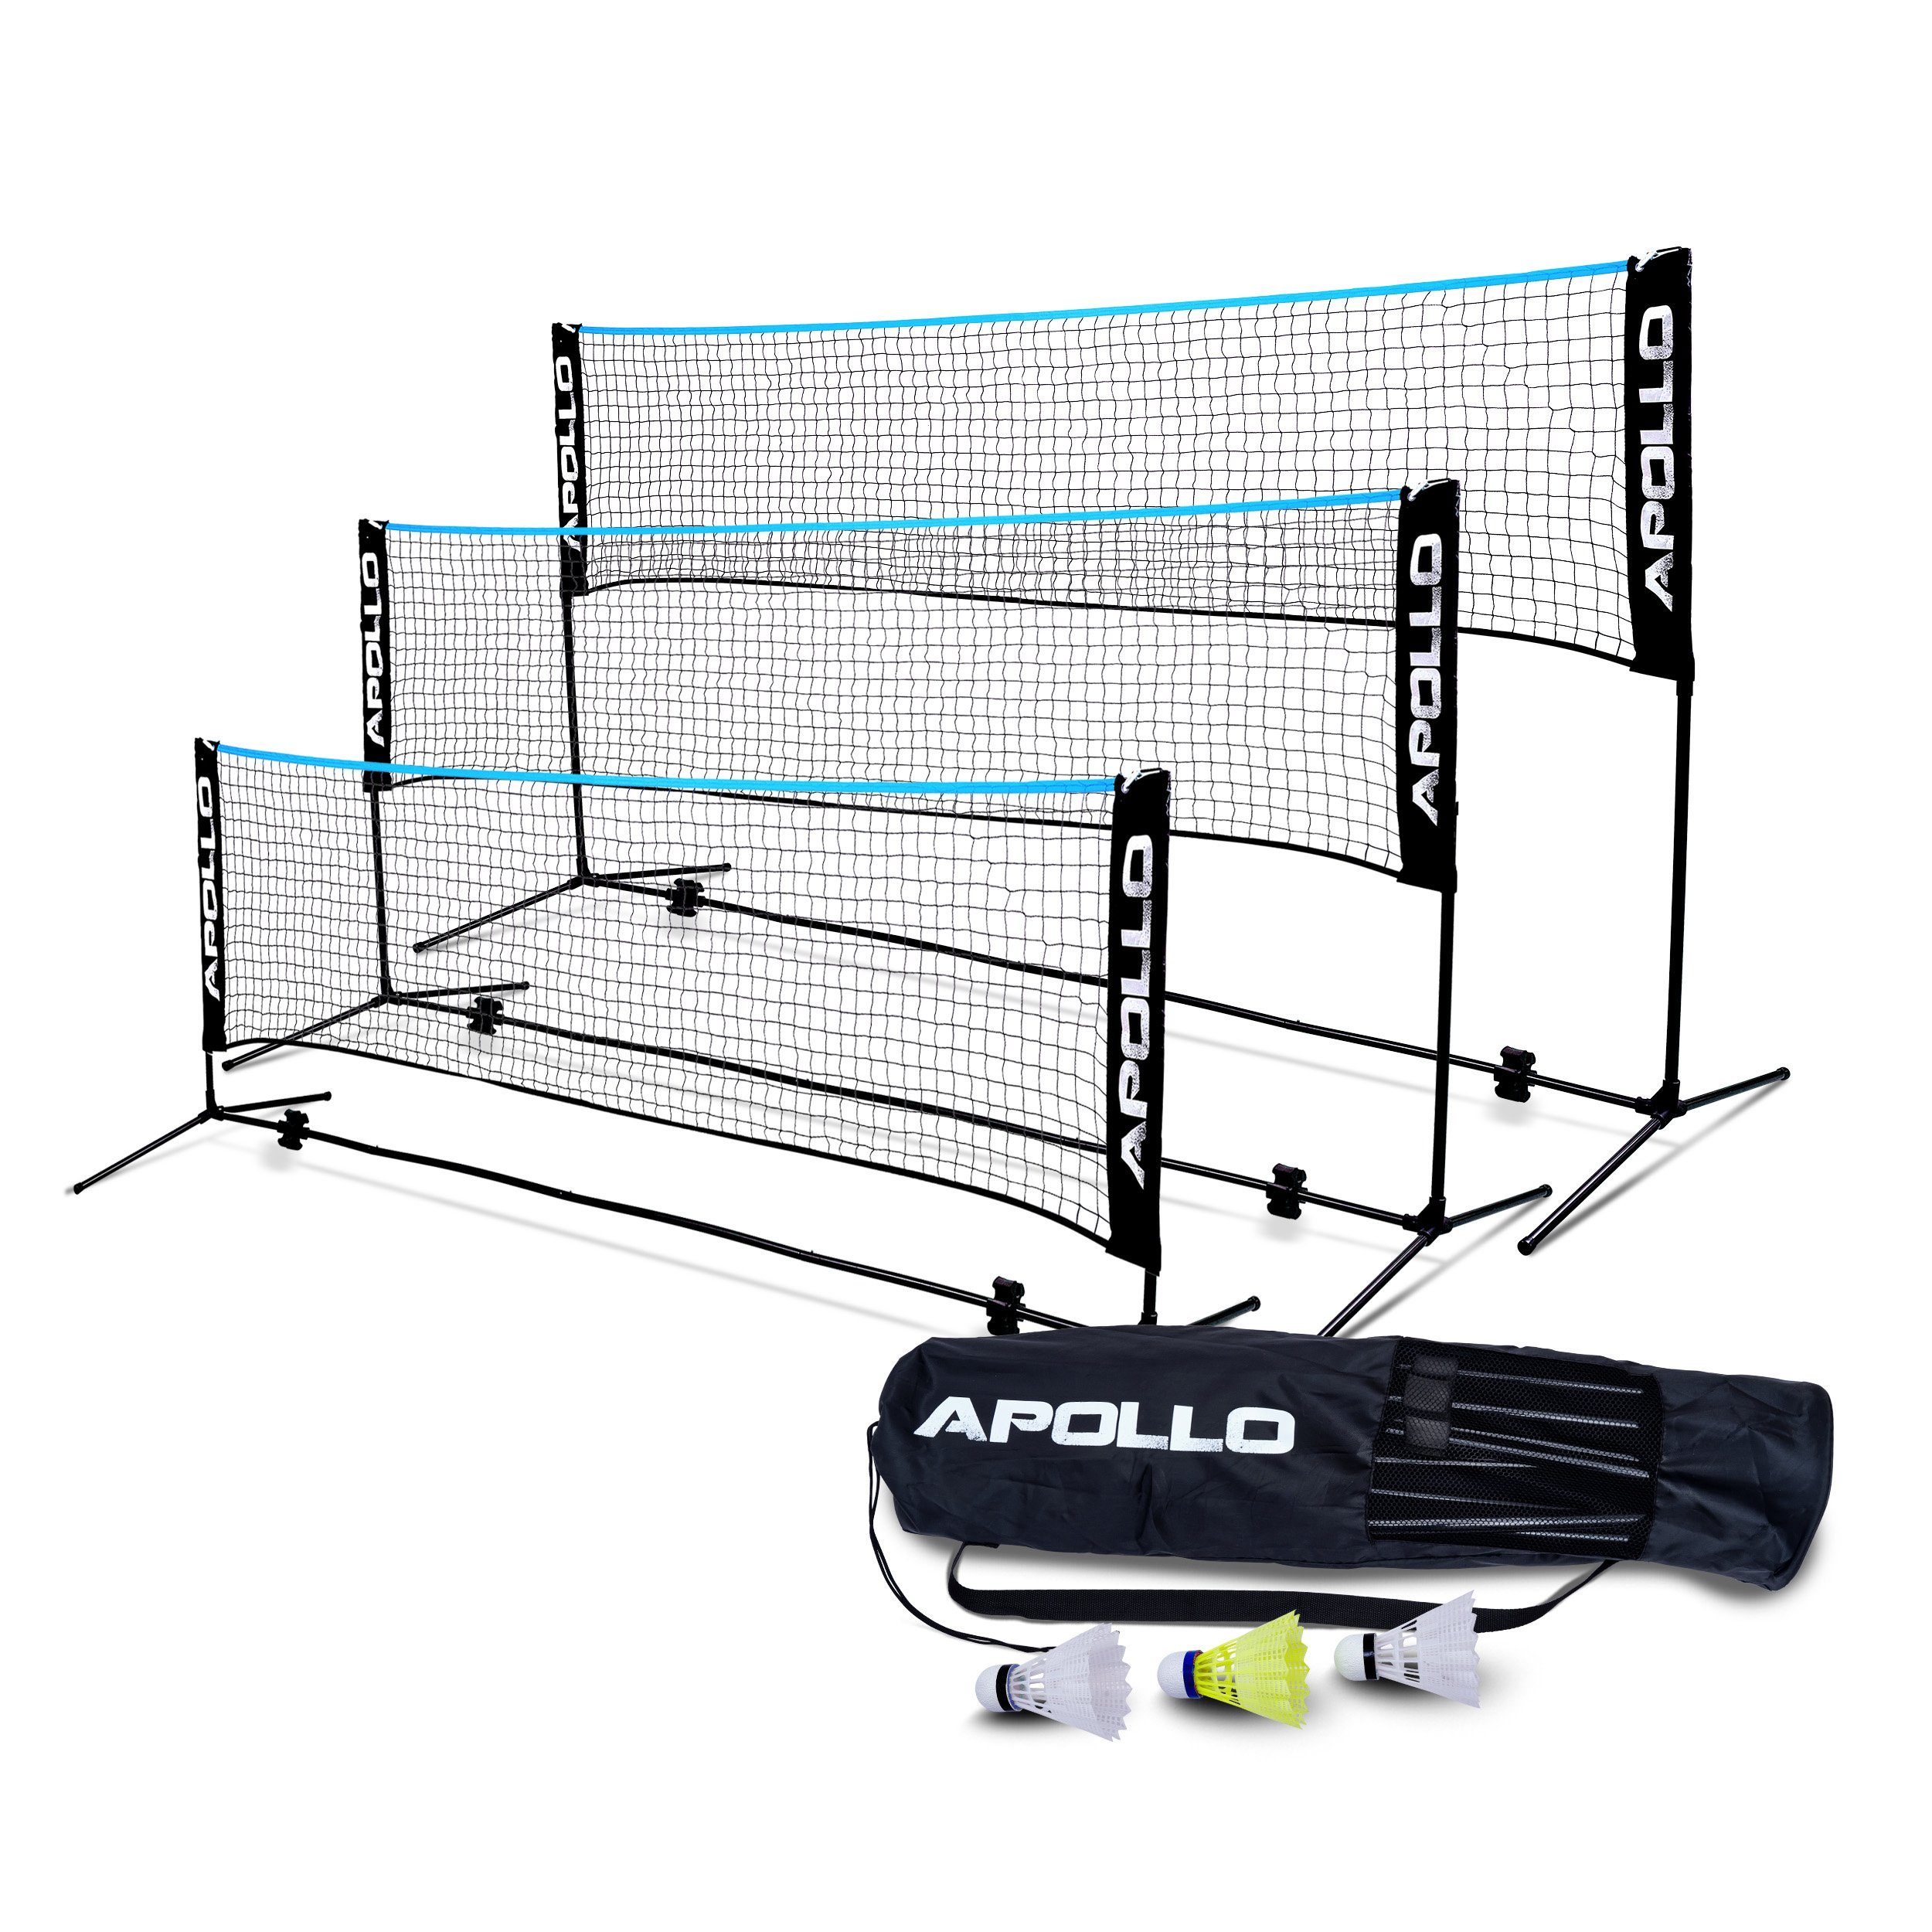 Apollo Badmintonnetz Badminton und Volleyball Schwarz/Blau Netz, 300 cm, cm, cm, 400 Federbällen 500 inkl. 3 höhenverstellbar